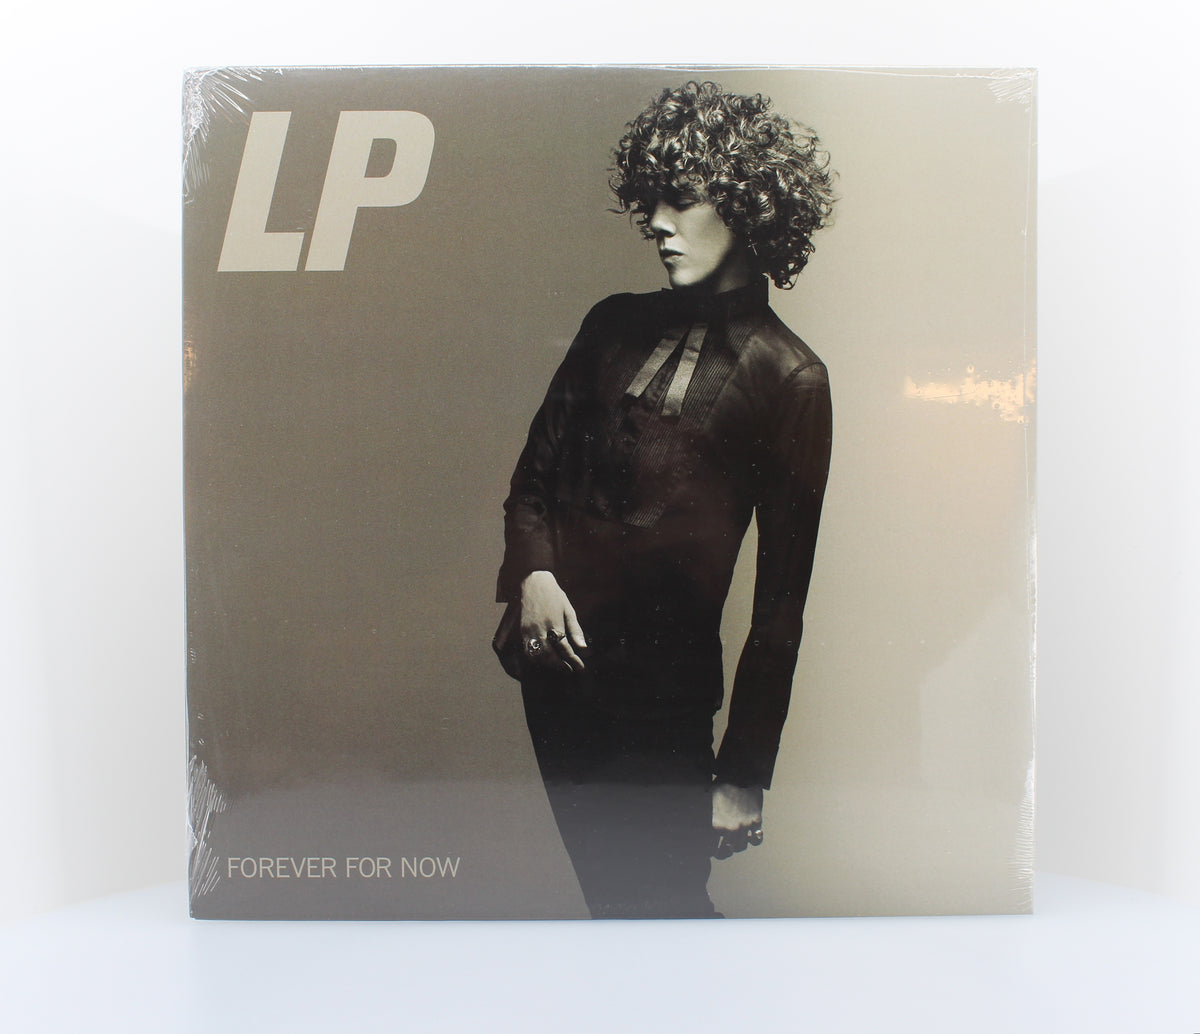 Laura Pergolizzi, L.P., Forever For Now, Vinyl (33⅓), Europe 2014